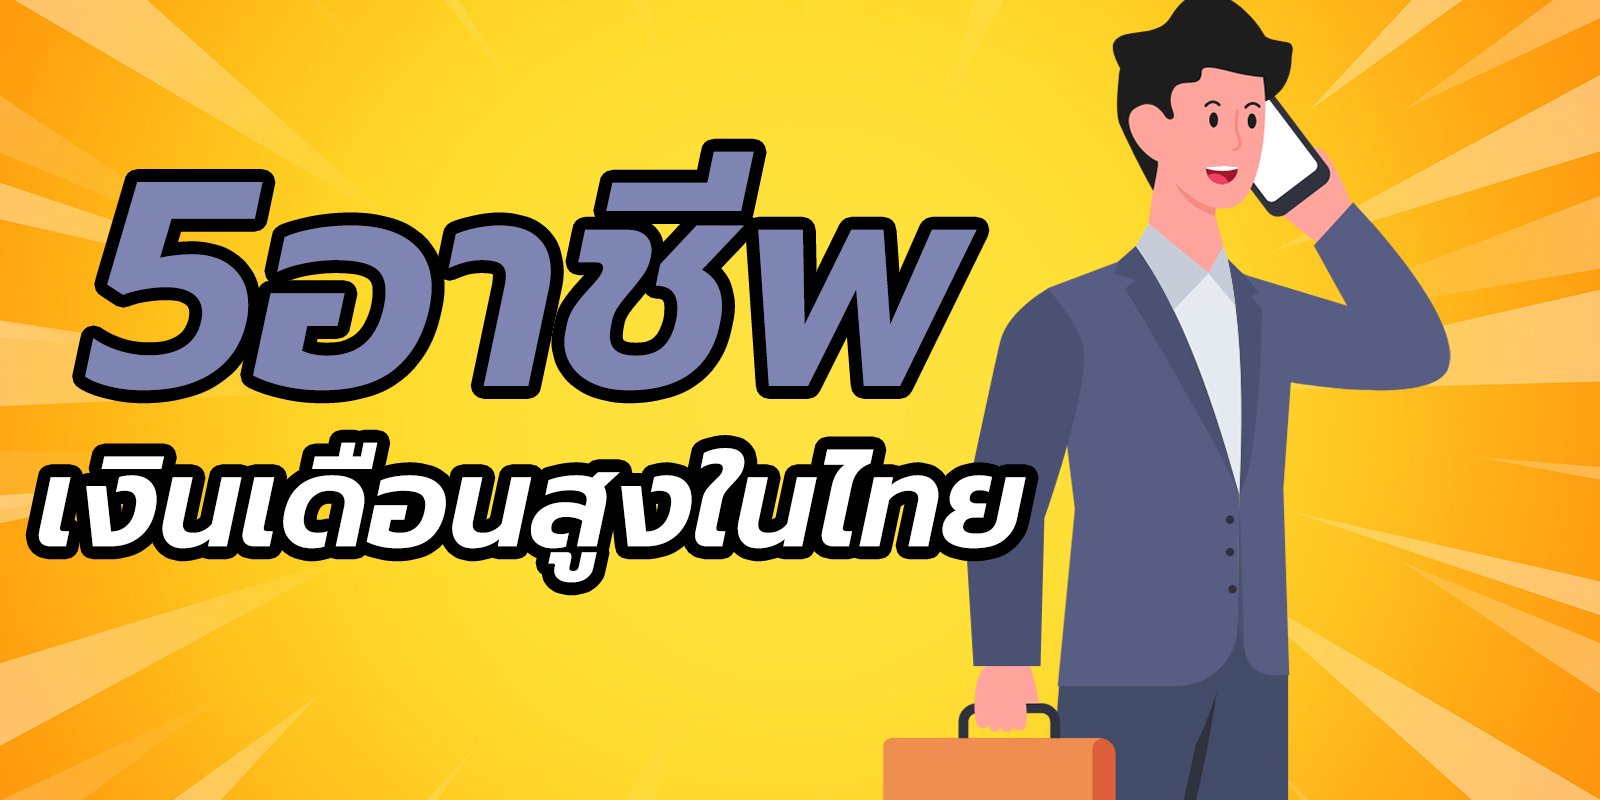 5 อาชีพที่เงินเดือนสูงที่สุดในไทย